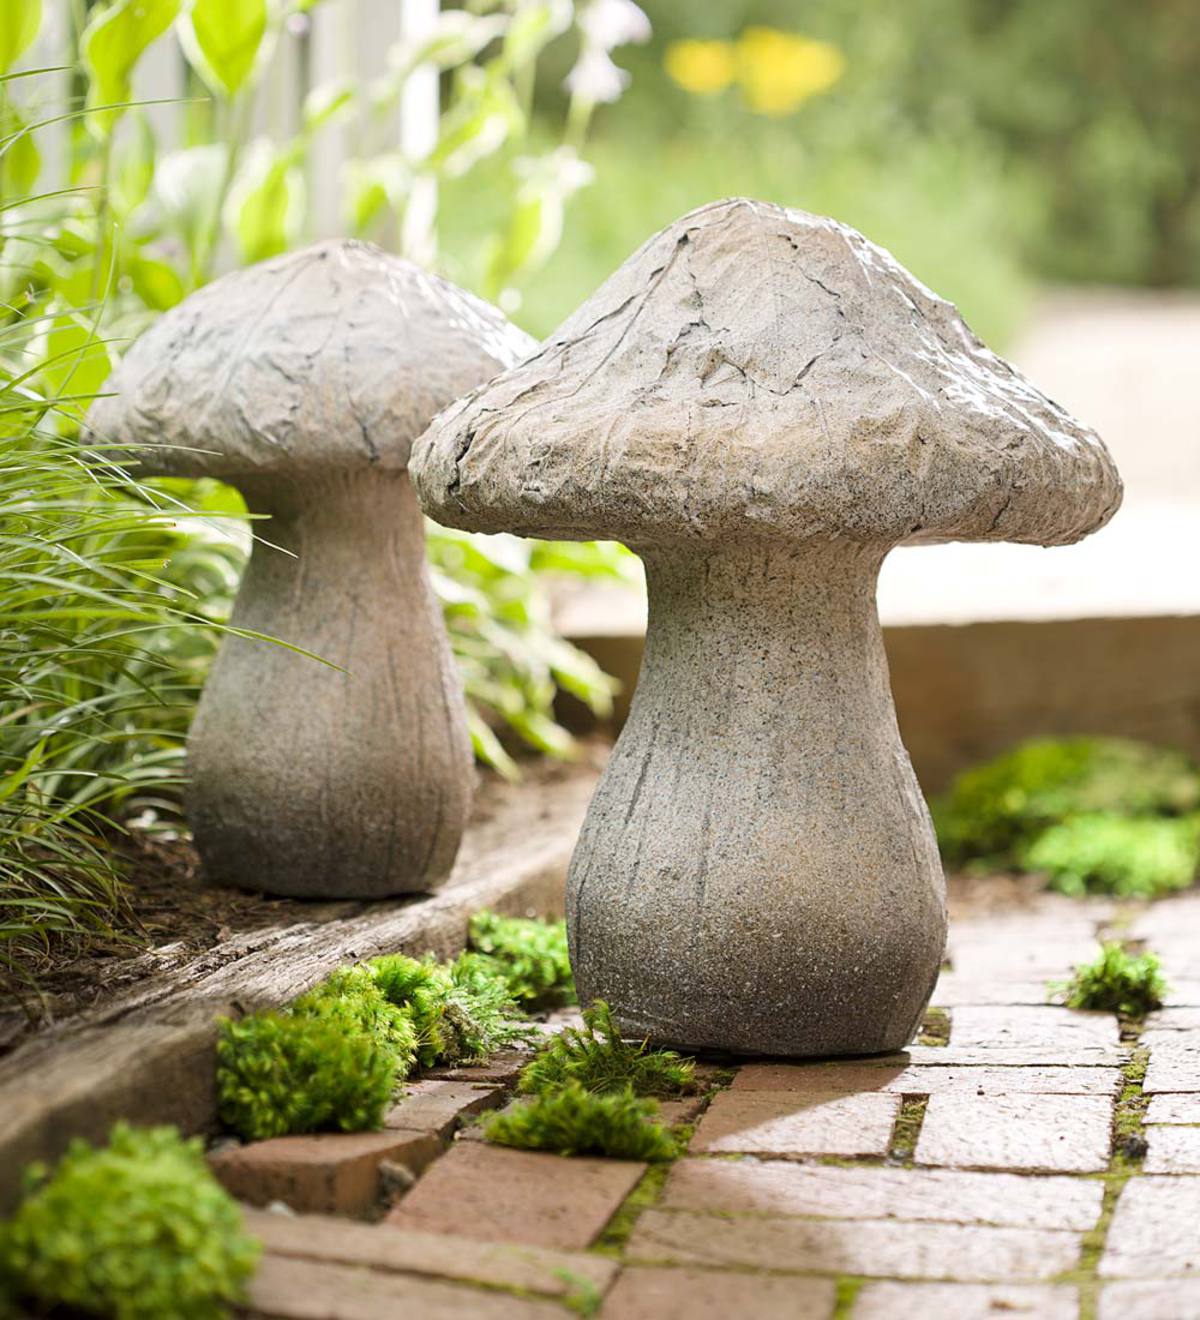 Lighted Color-Changing Mushroom Sculptures, Set of 2 - Grey